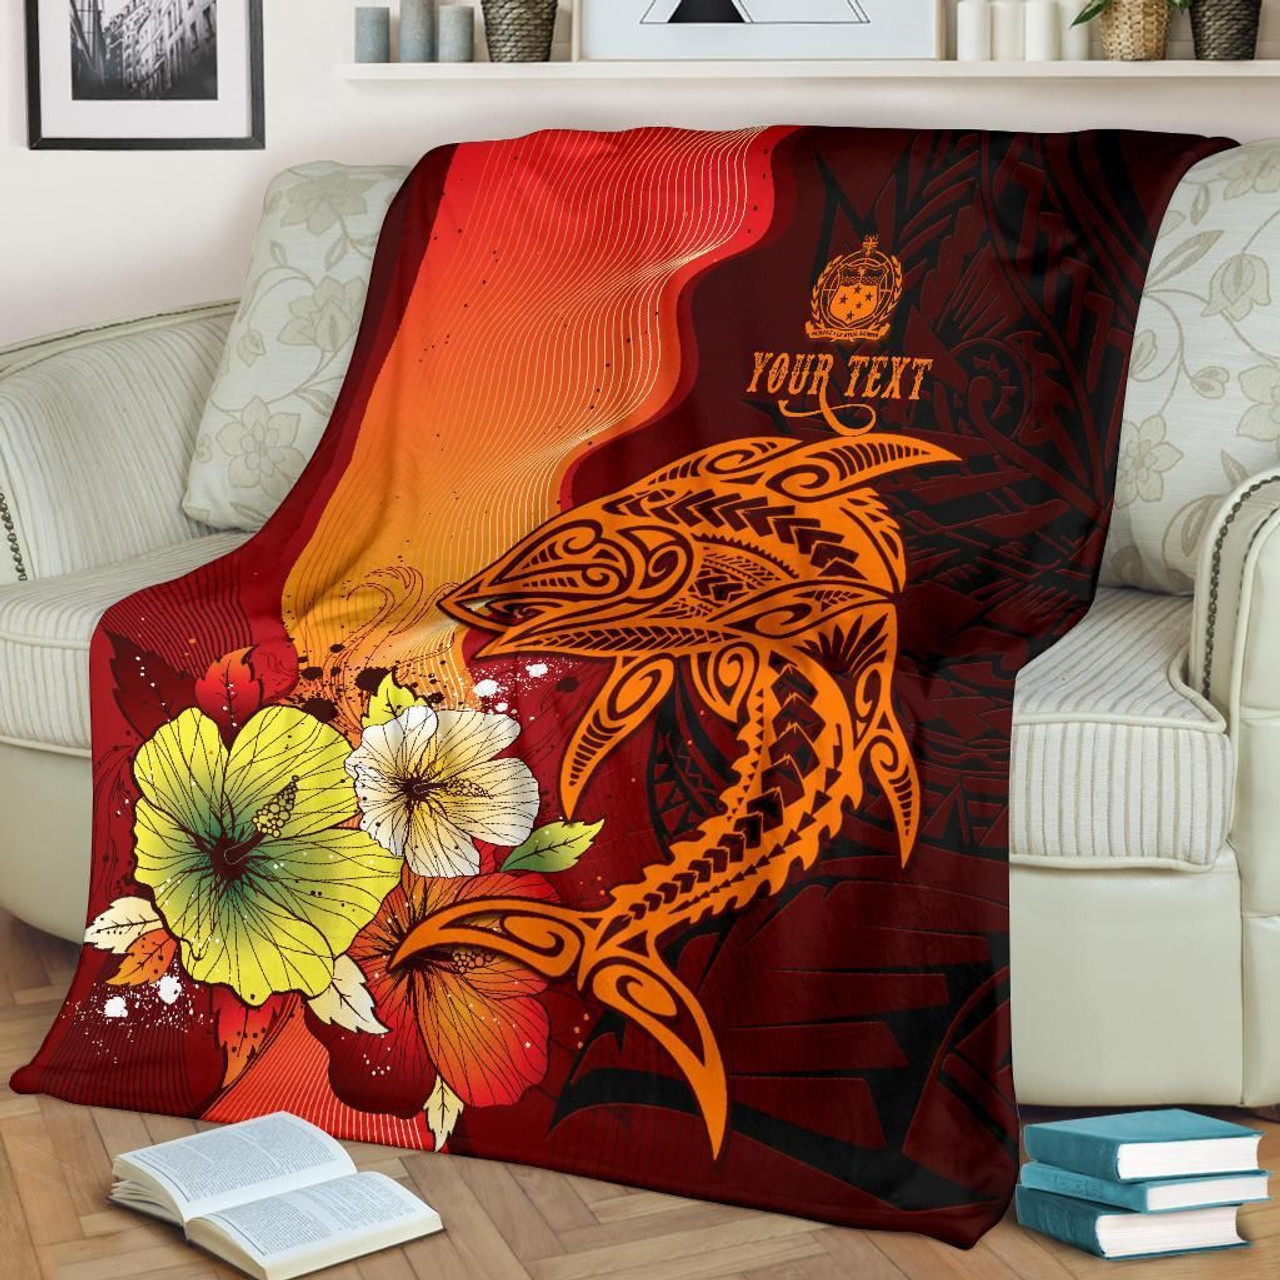 Samoa Custom Personalised Premium Blanket - Tribal Tuna Fish 8